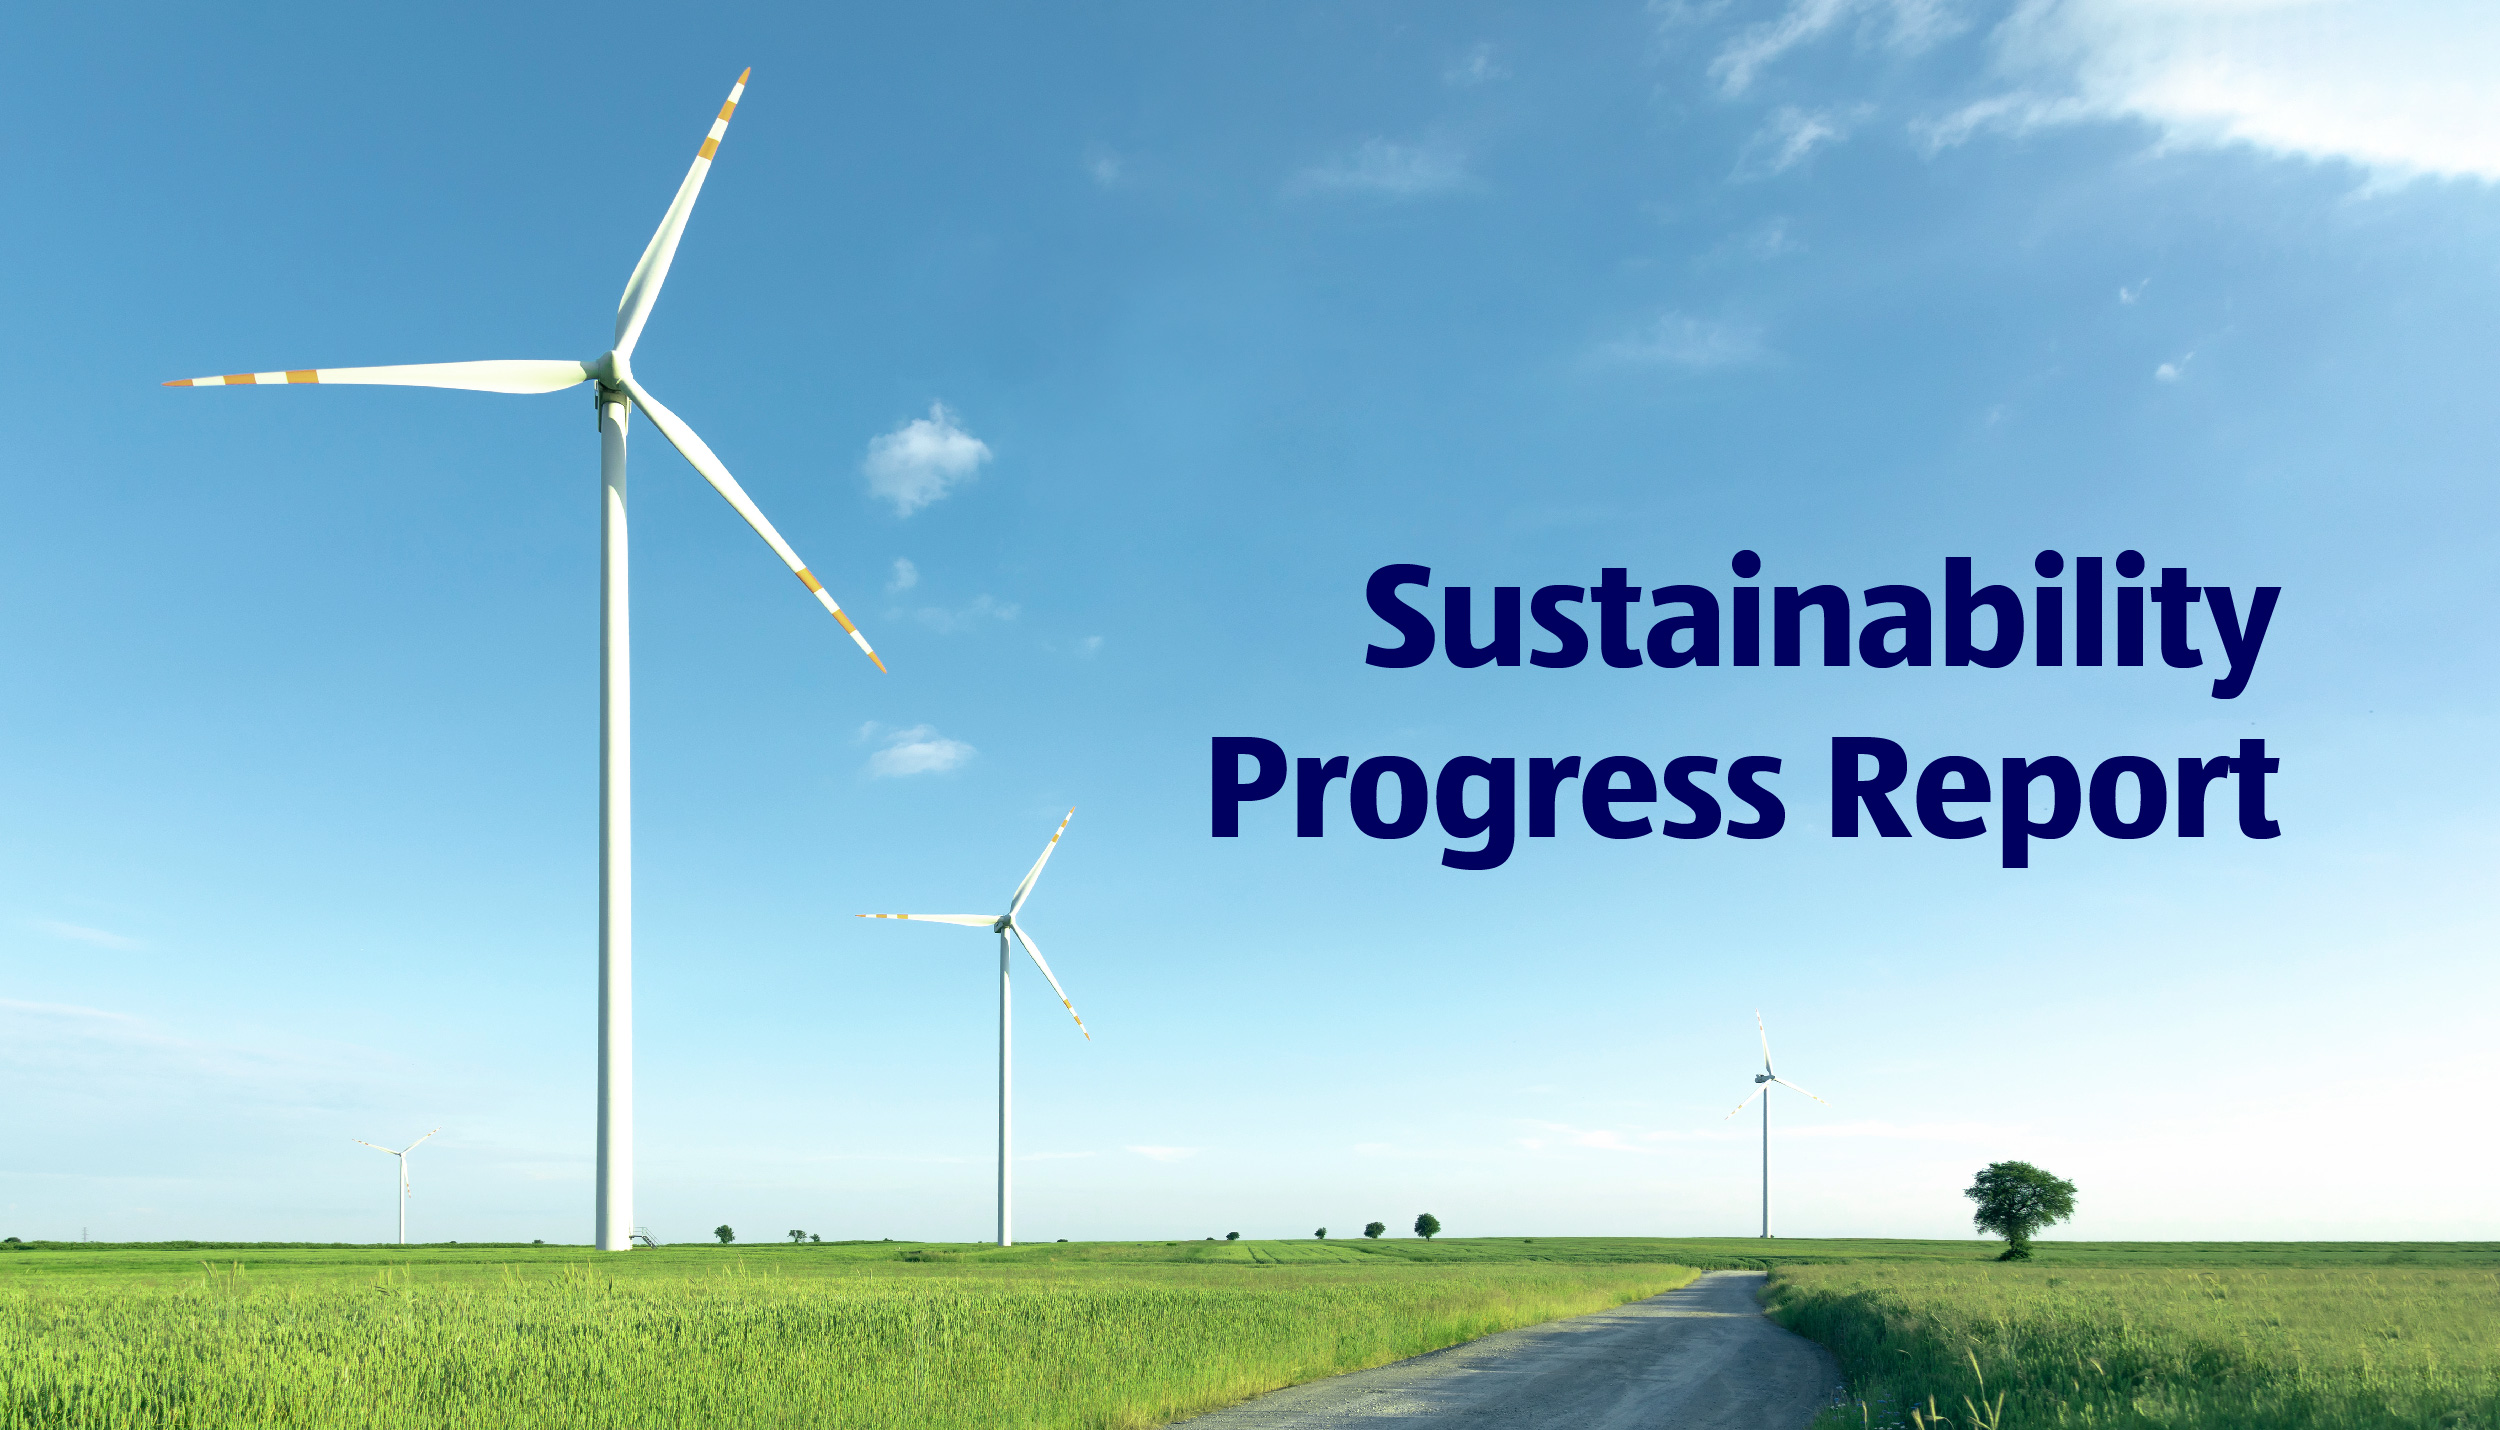 ALDI Australia Launches its Inaugural Sustainability Progress Report